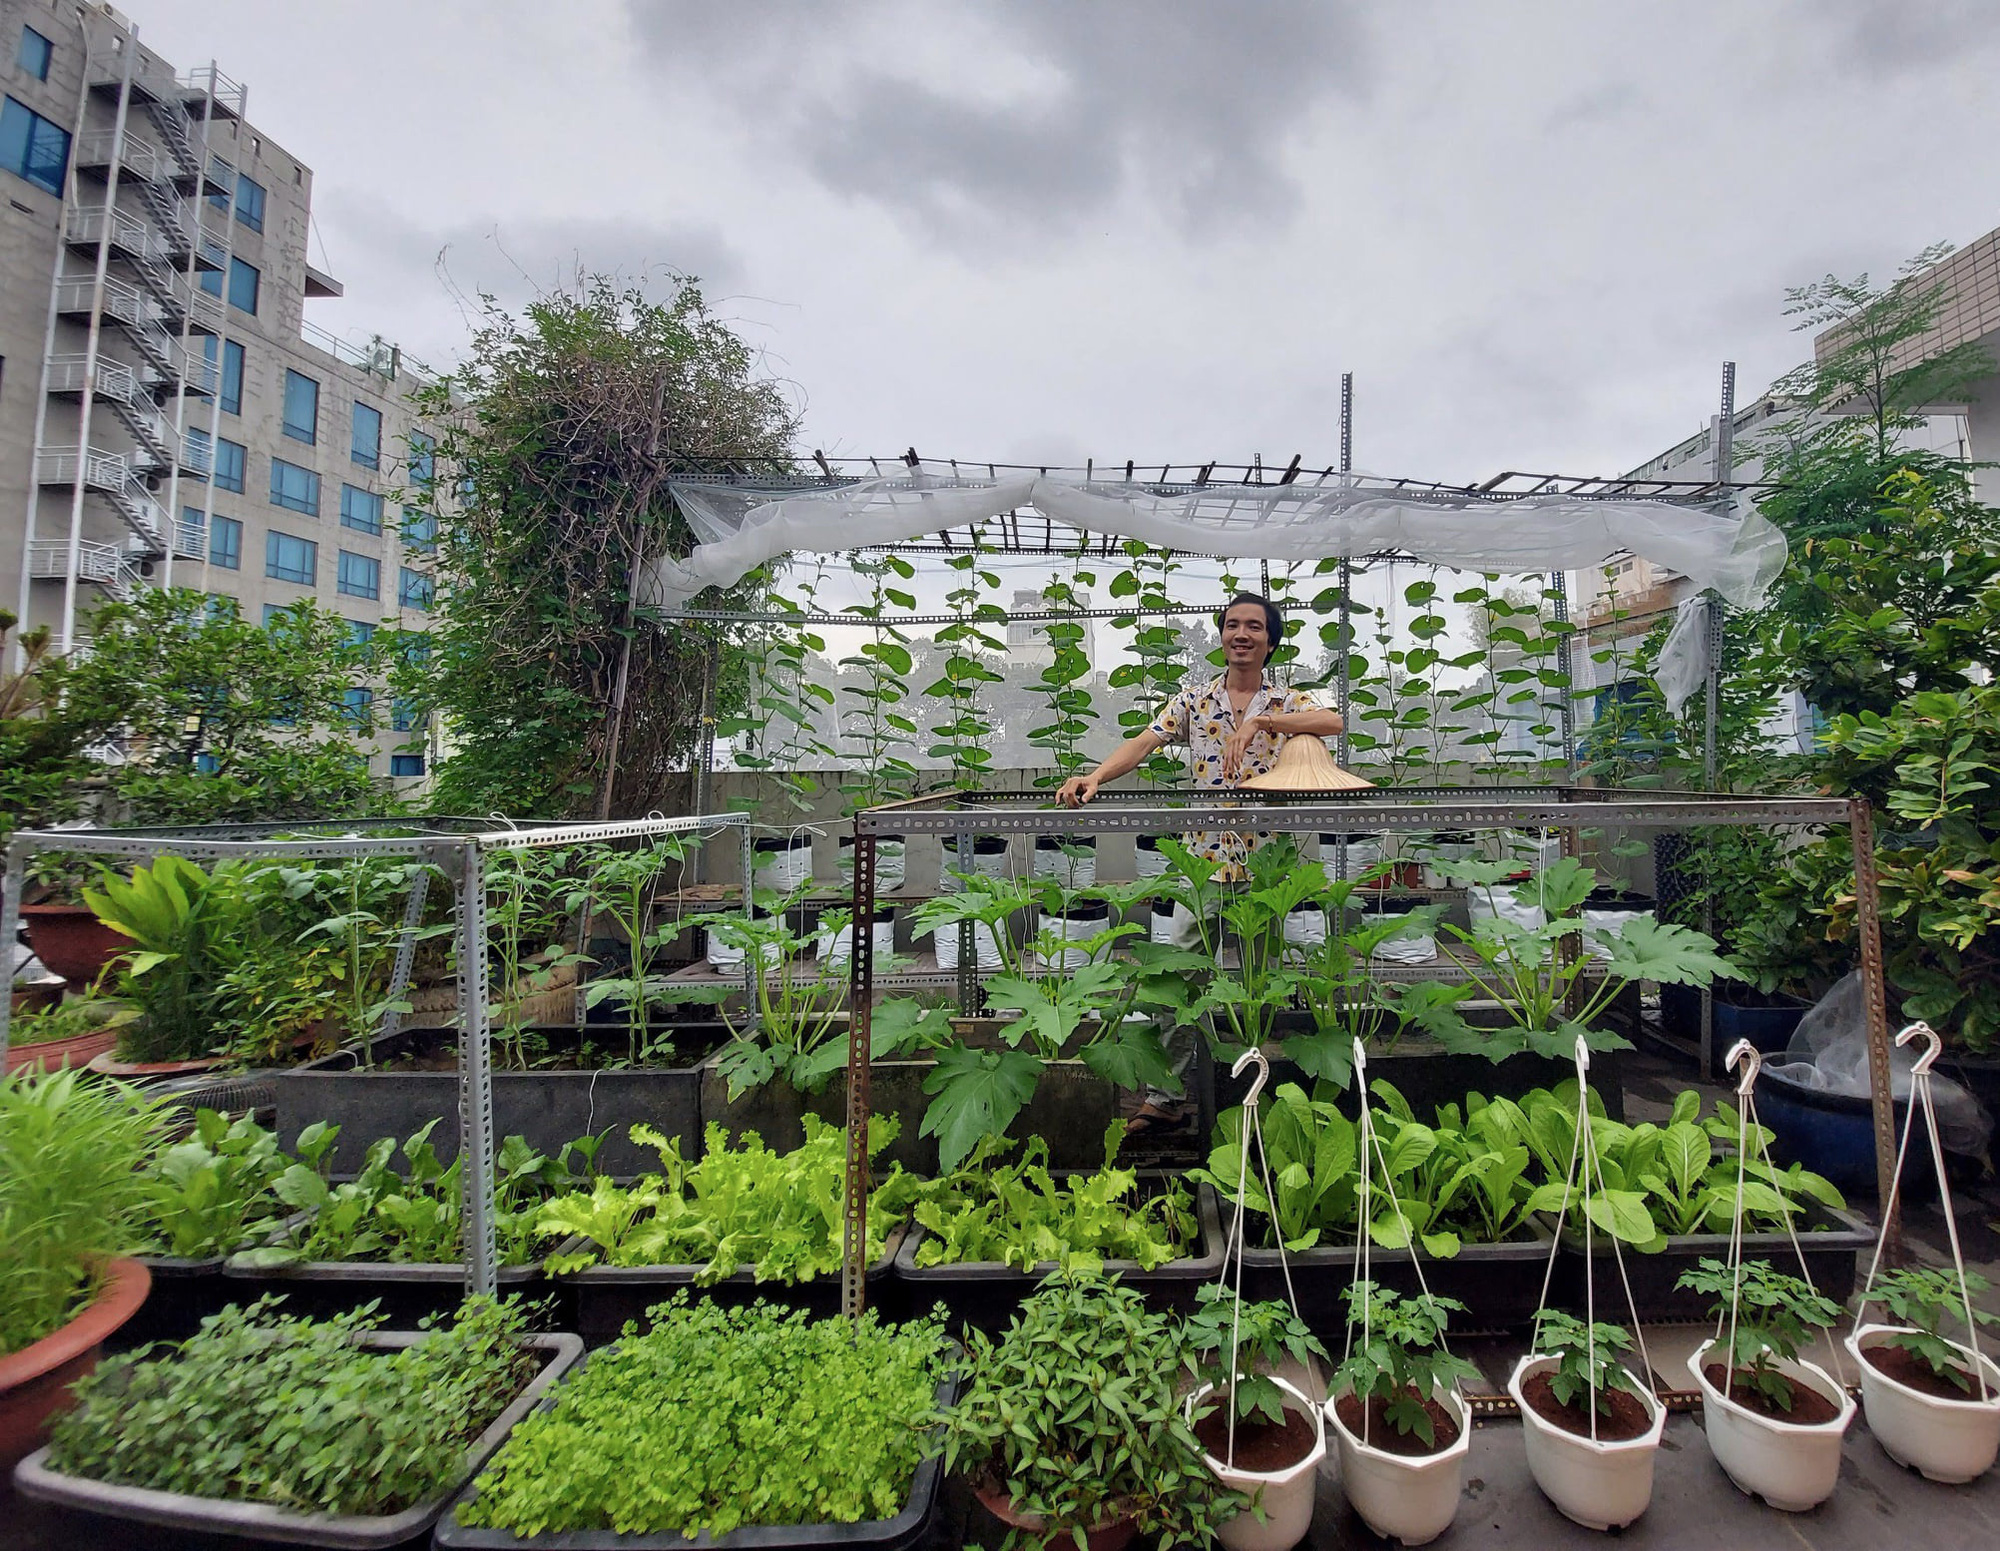 Vườn rau sân thượng Sài Gòn là một xu hướng đang lên của người dân thành phố. Không chỉ giúp trang trí sân thượng thêm đẹp mắt, vườn rau còn giúp tạo ra những sản phẩm sạch và an toàn cho sức khỏe. Nếu bạn muốn trải nghiệm một phong cách sống khỏe và tiện lợi, hãy chọn vườn rau sân thượng Sài Gòn. Bạn sẽ yêu thích không gian xanh mát, tập trung làm việc và trồng rau ngay tại nhà.